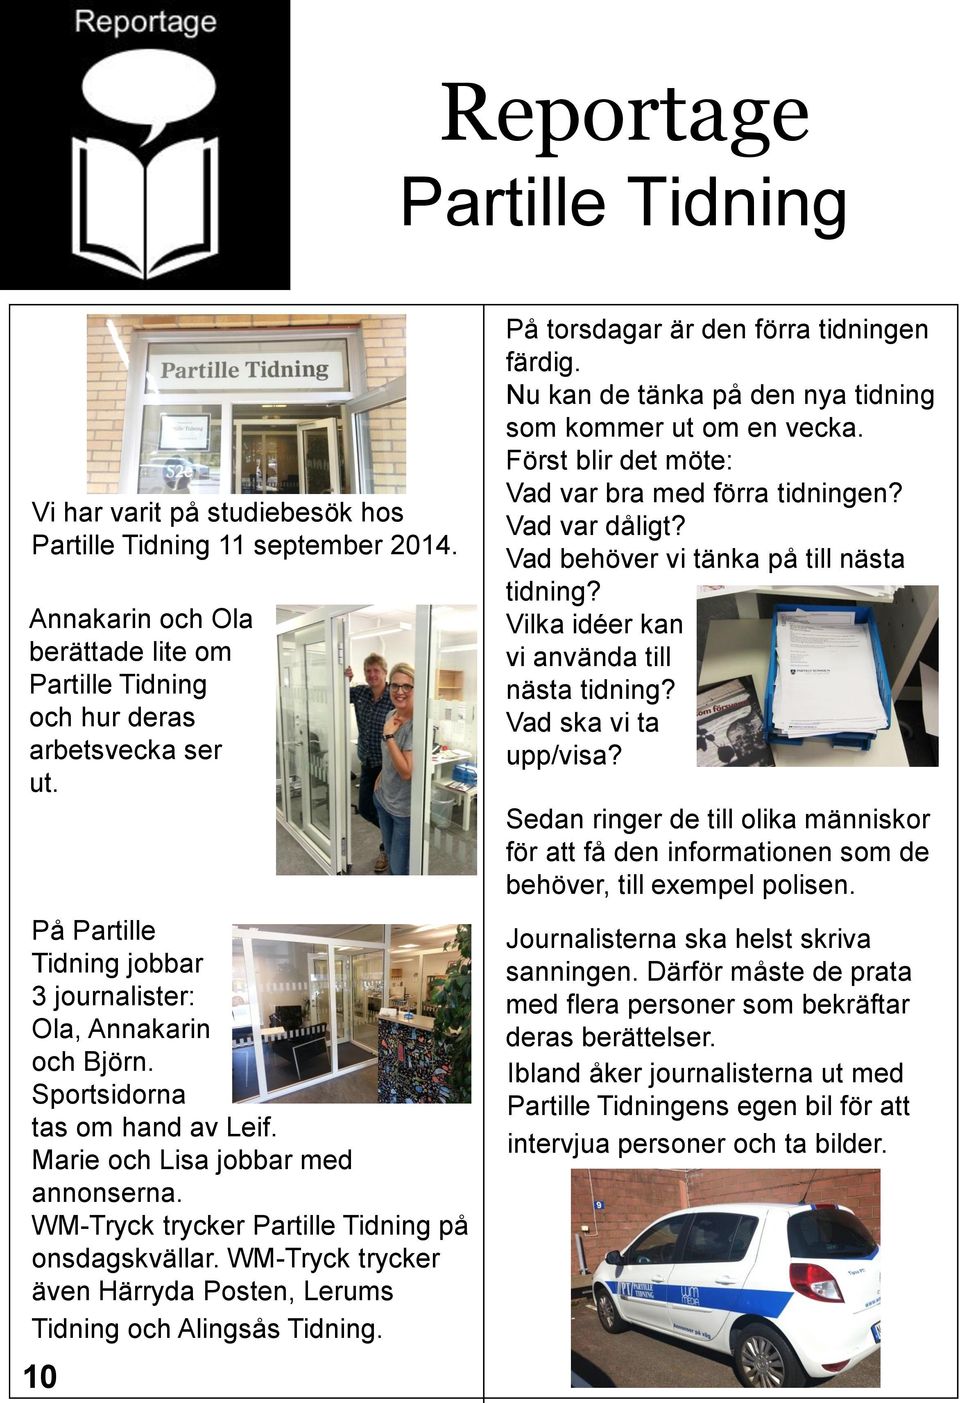 WM-Tryck trycker även Härryda Posten, Lerums Tidning och Alingsås Tidning. 10 På torsdagar är den förra tidningen färdig. Nu kan de tänka på den nya tidning som kommer ut om en vecka.